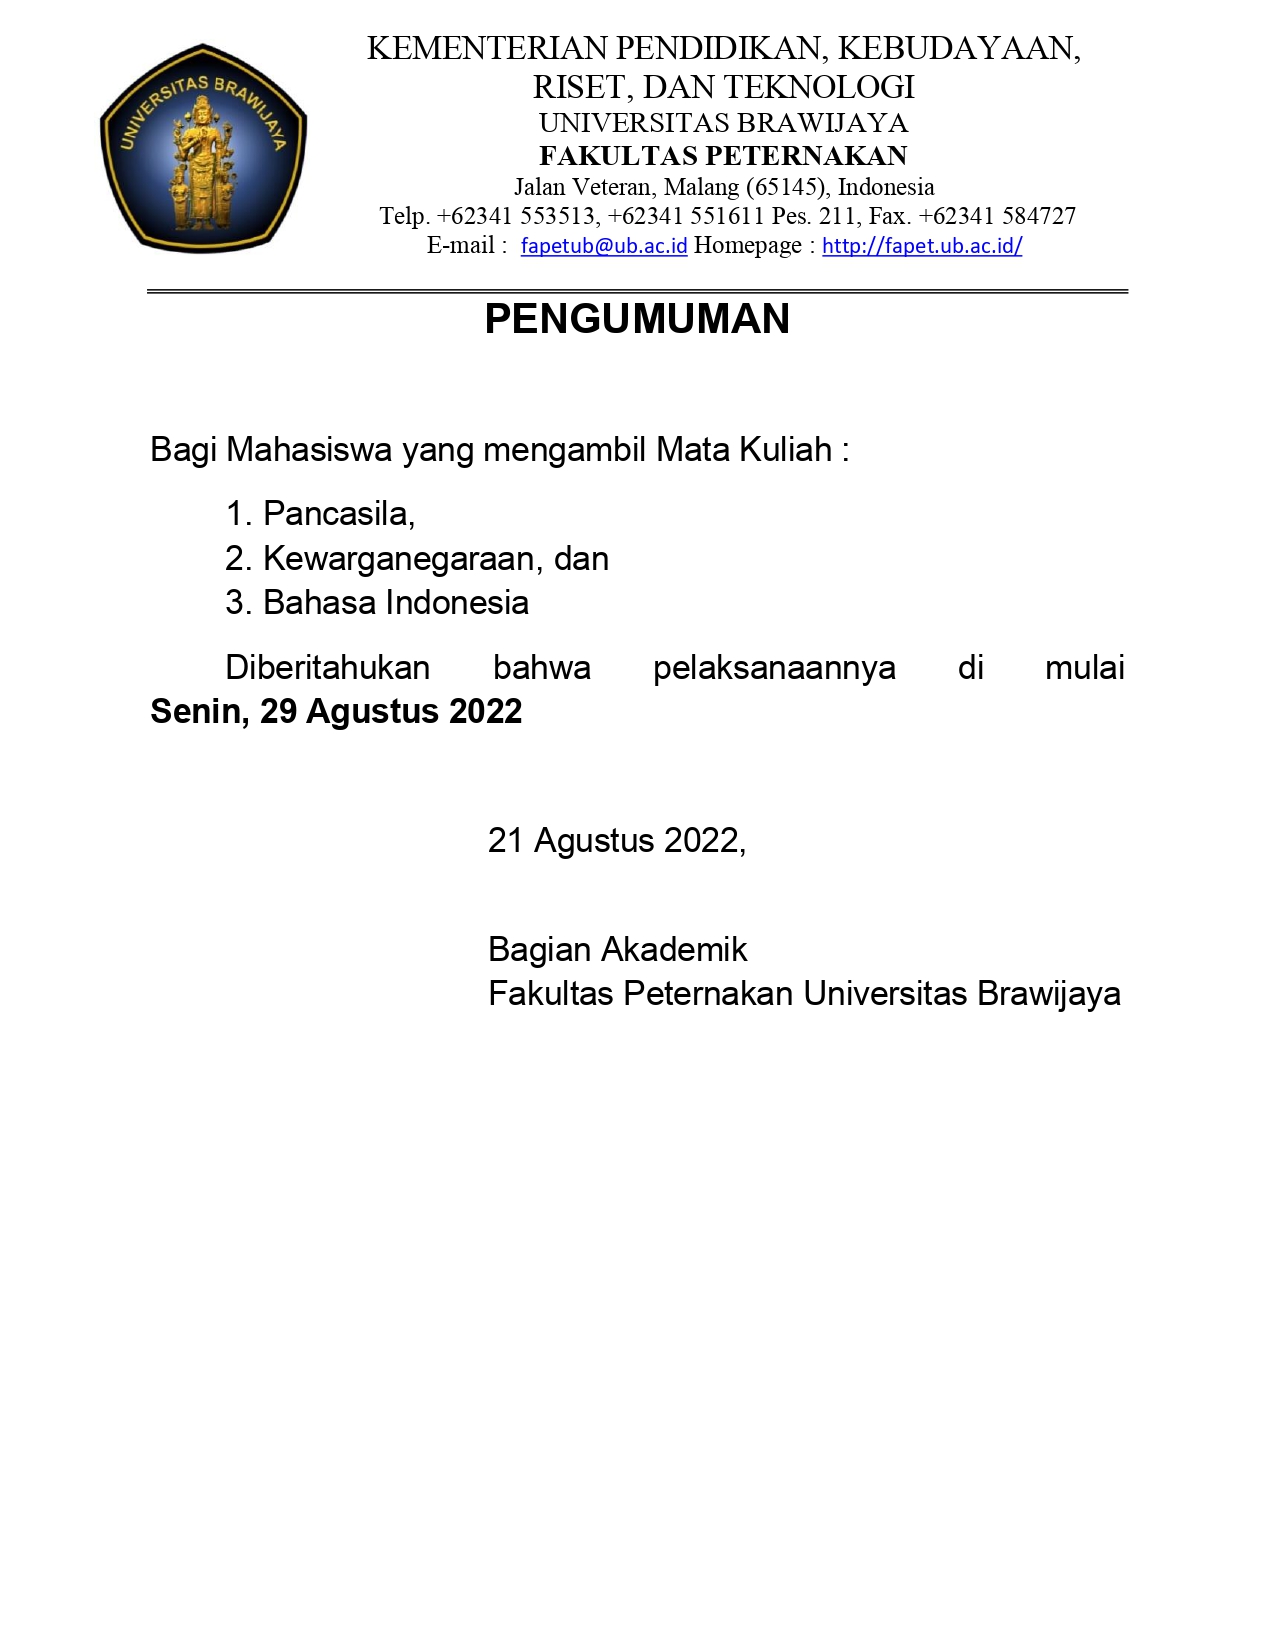 (Indonesia) Pelaksanaan Perkuliahan MK Pancasila, Kewarganegaraan, dan Bahasa Indonesia